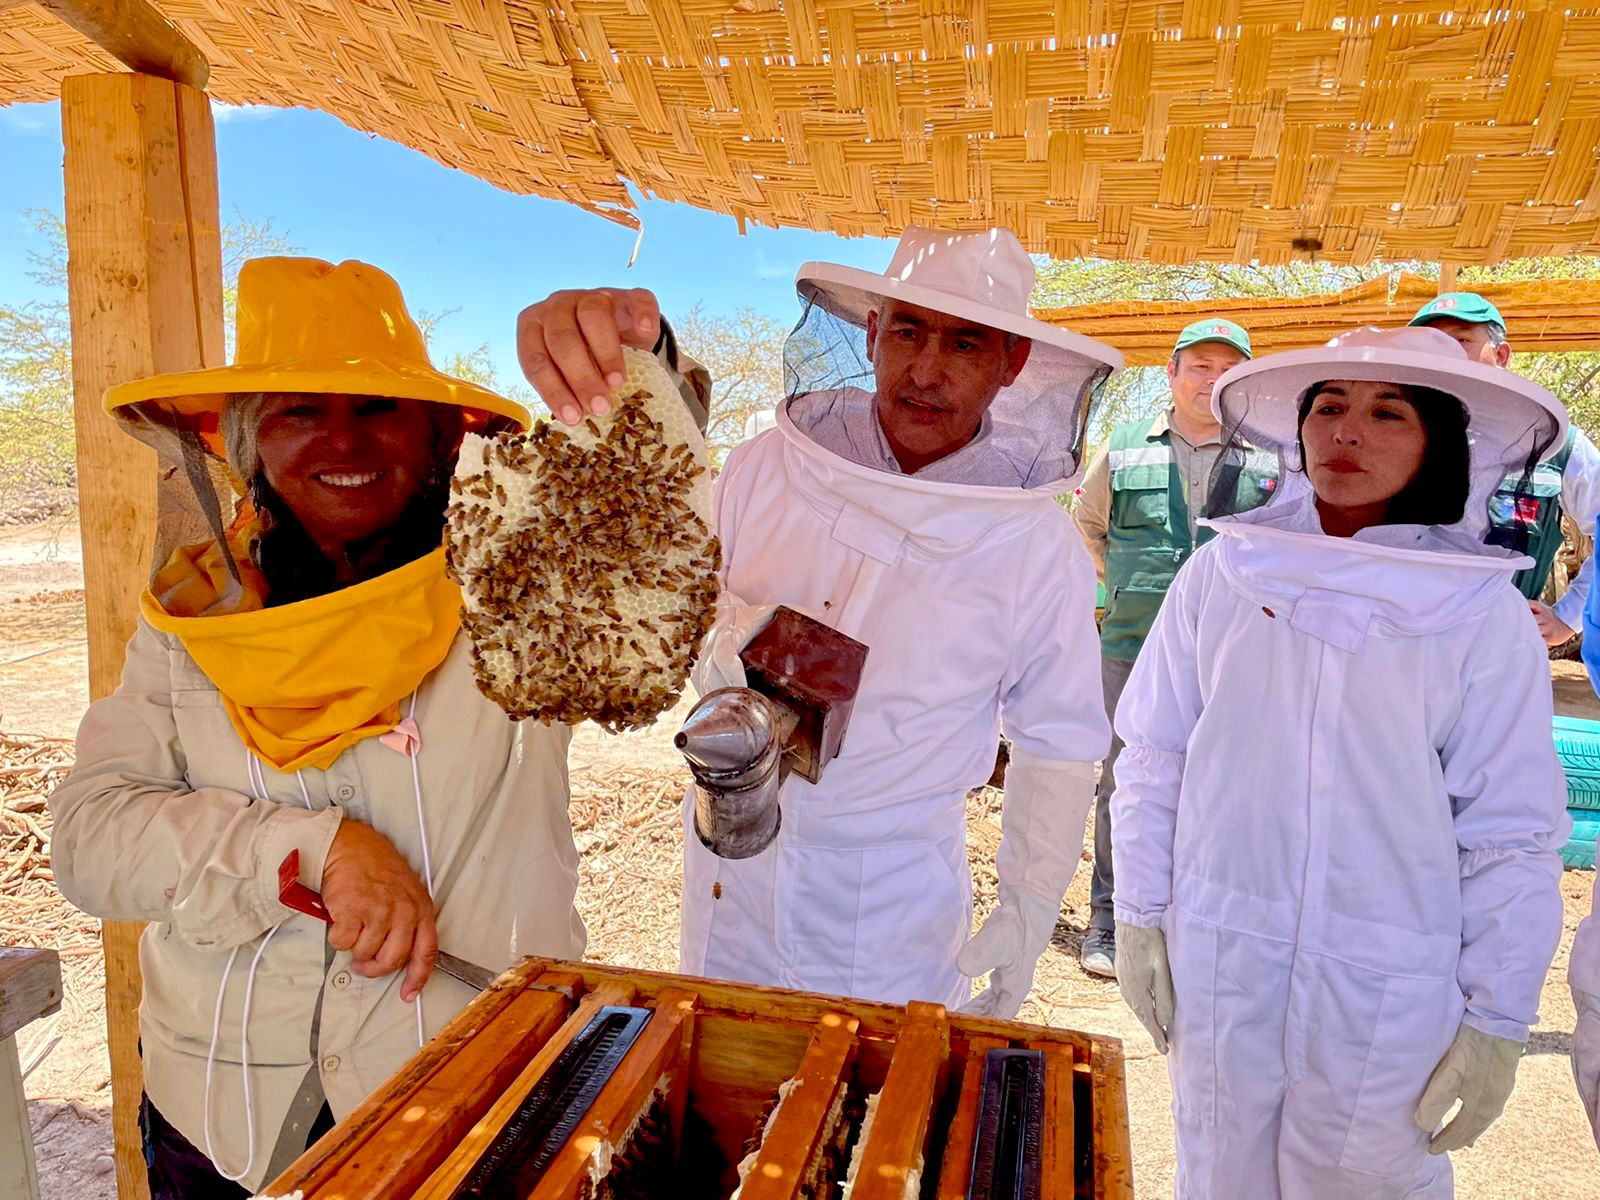 Apicultora produce miel en el desierto más árido del mundo, en plena Pampa del Tamarugal